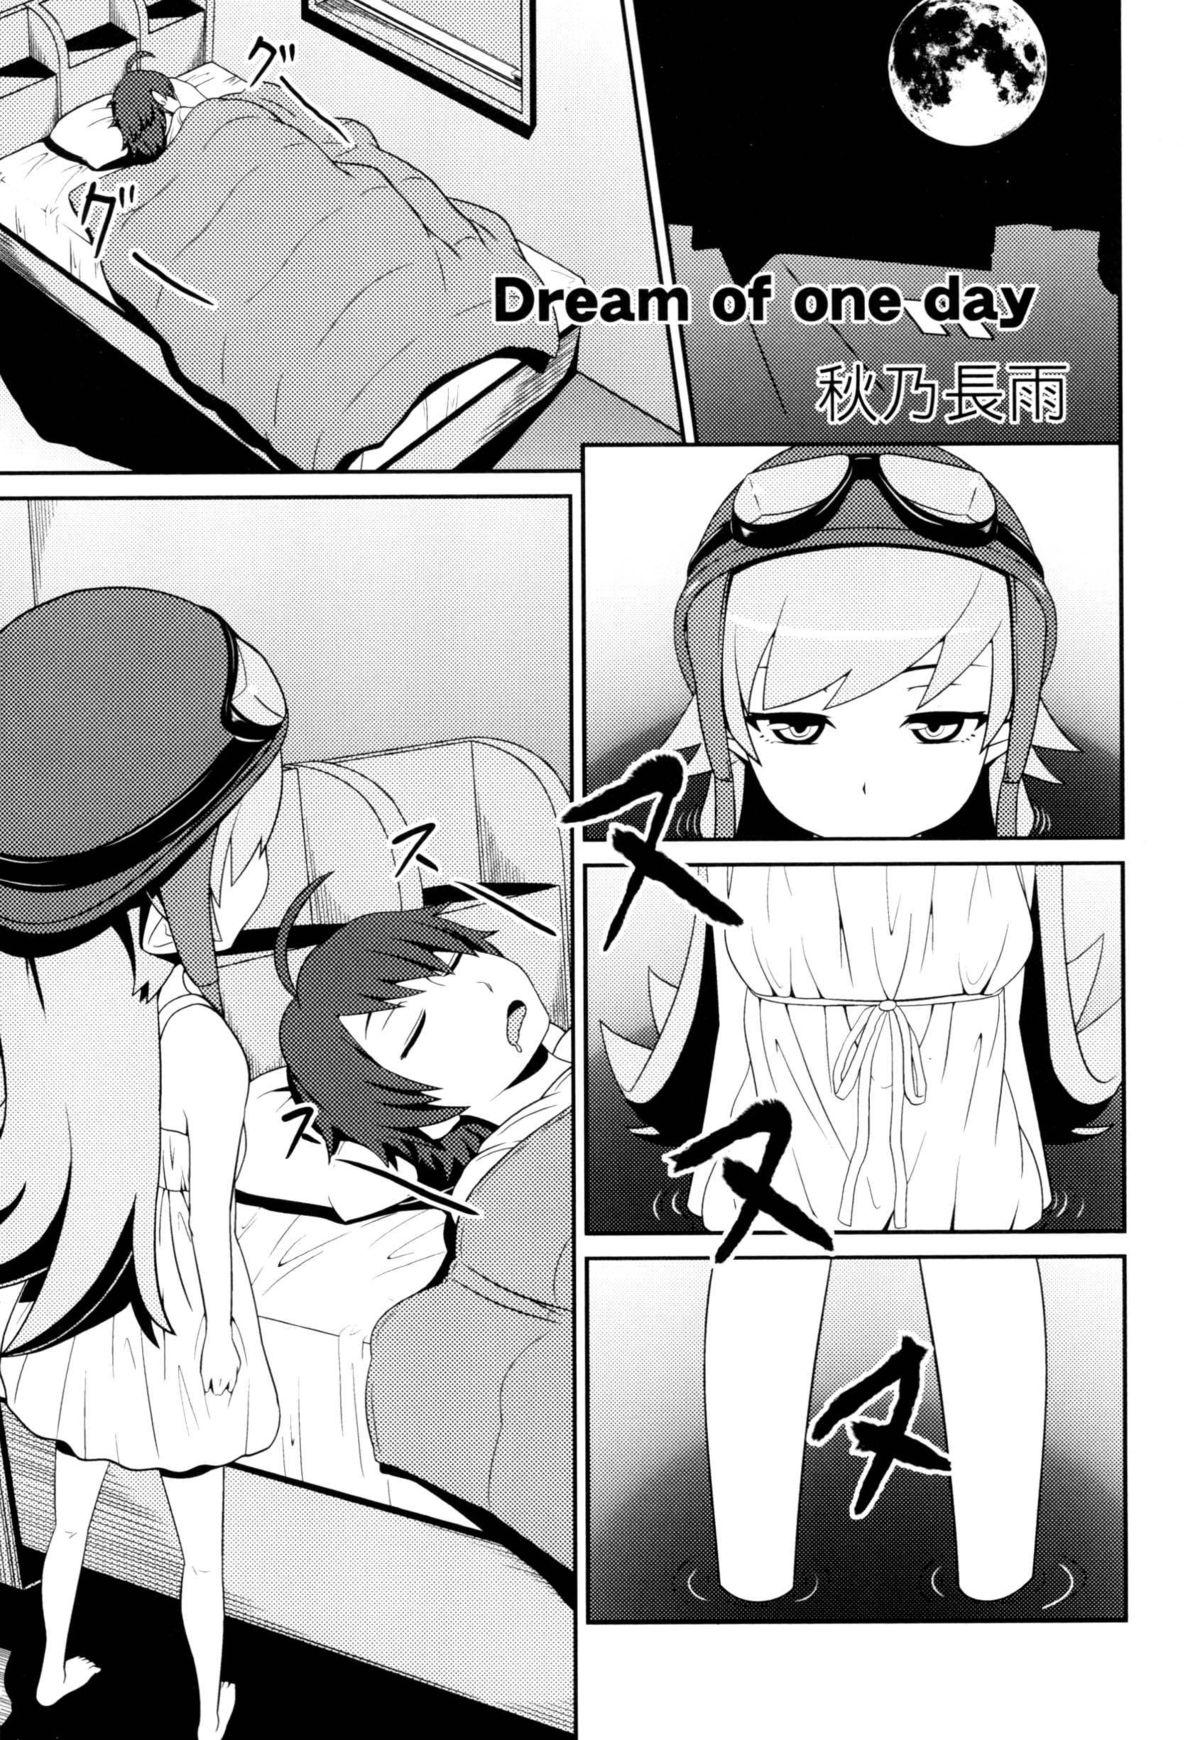 Hot Teen Dream of one day - Bakemonogatari Femboy - Page 3